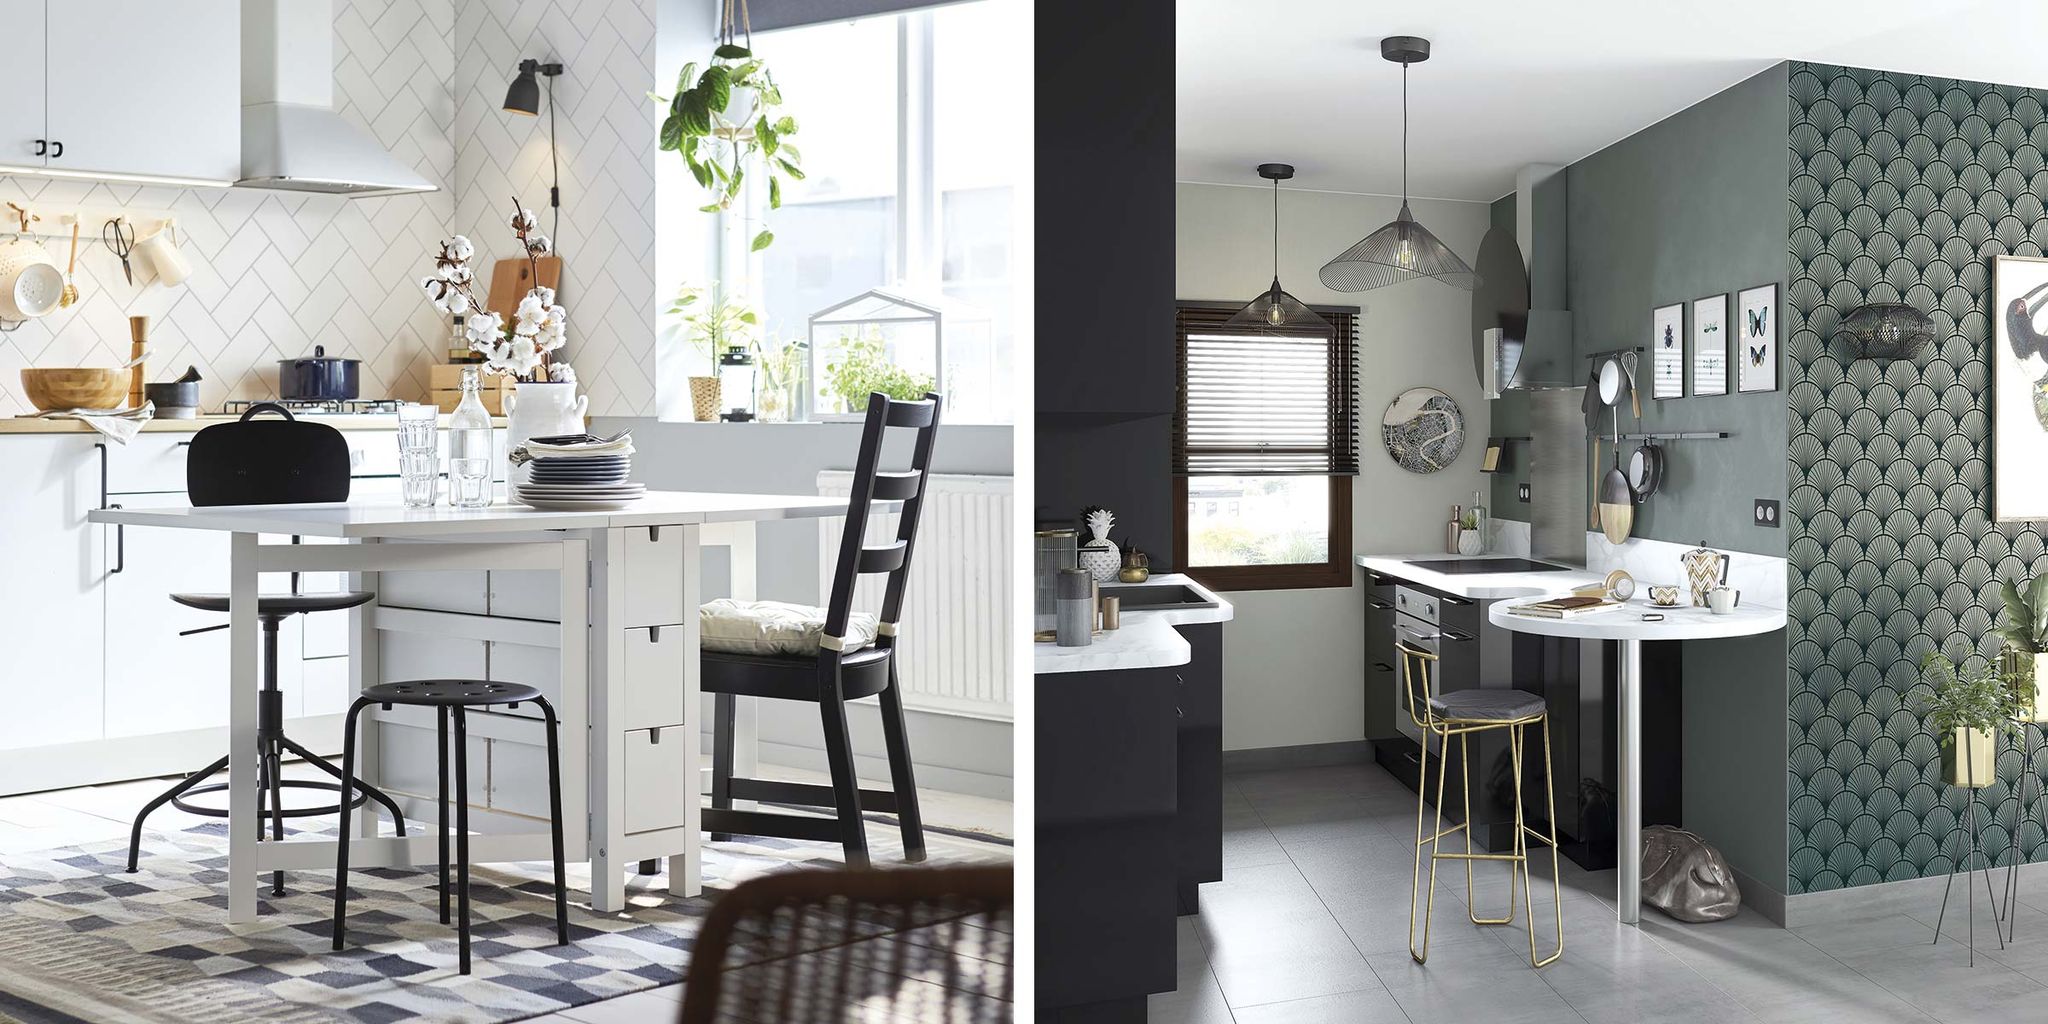 Una cocina familiar completa y luminosa - IKEA